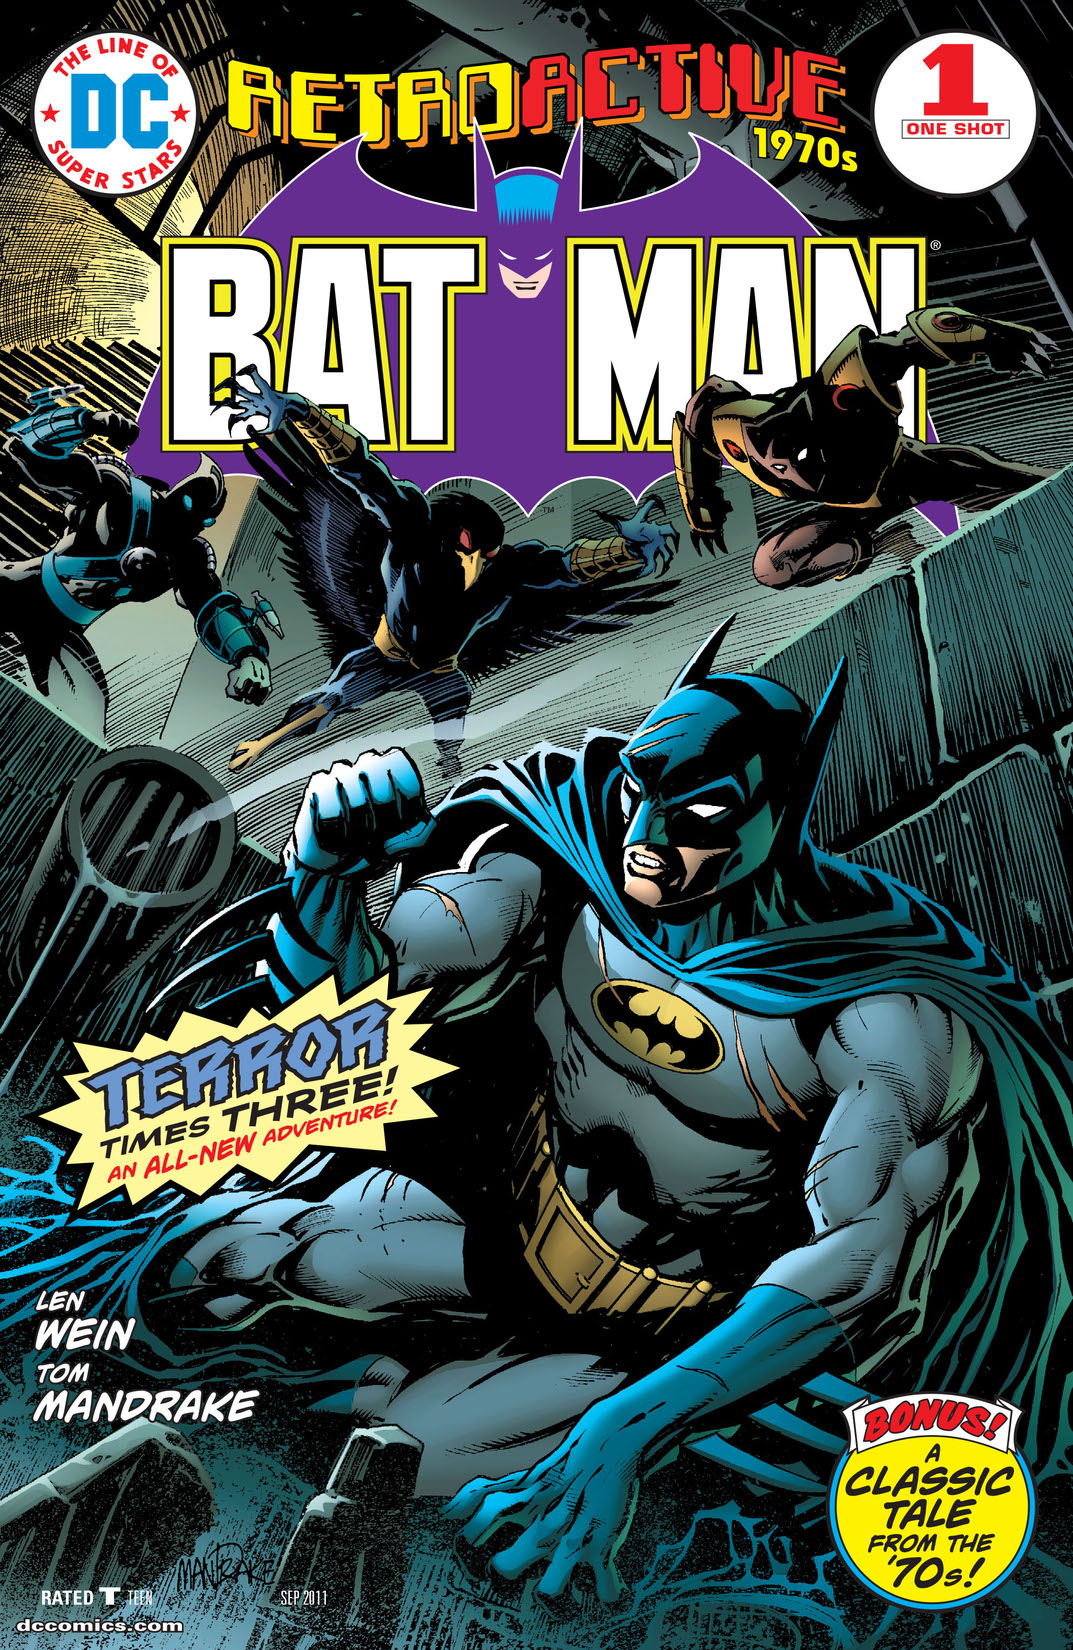 DC Retroactive: Batman -  The '70s #1 preview images